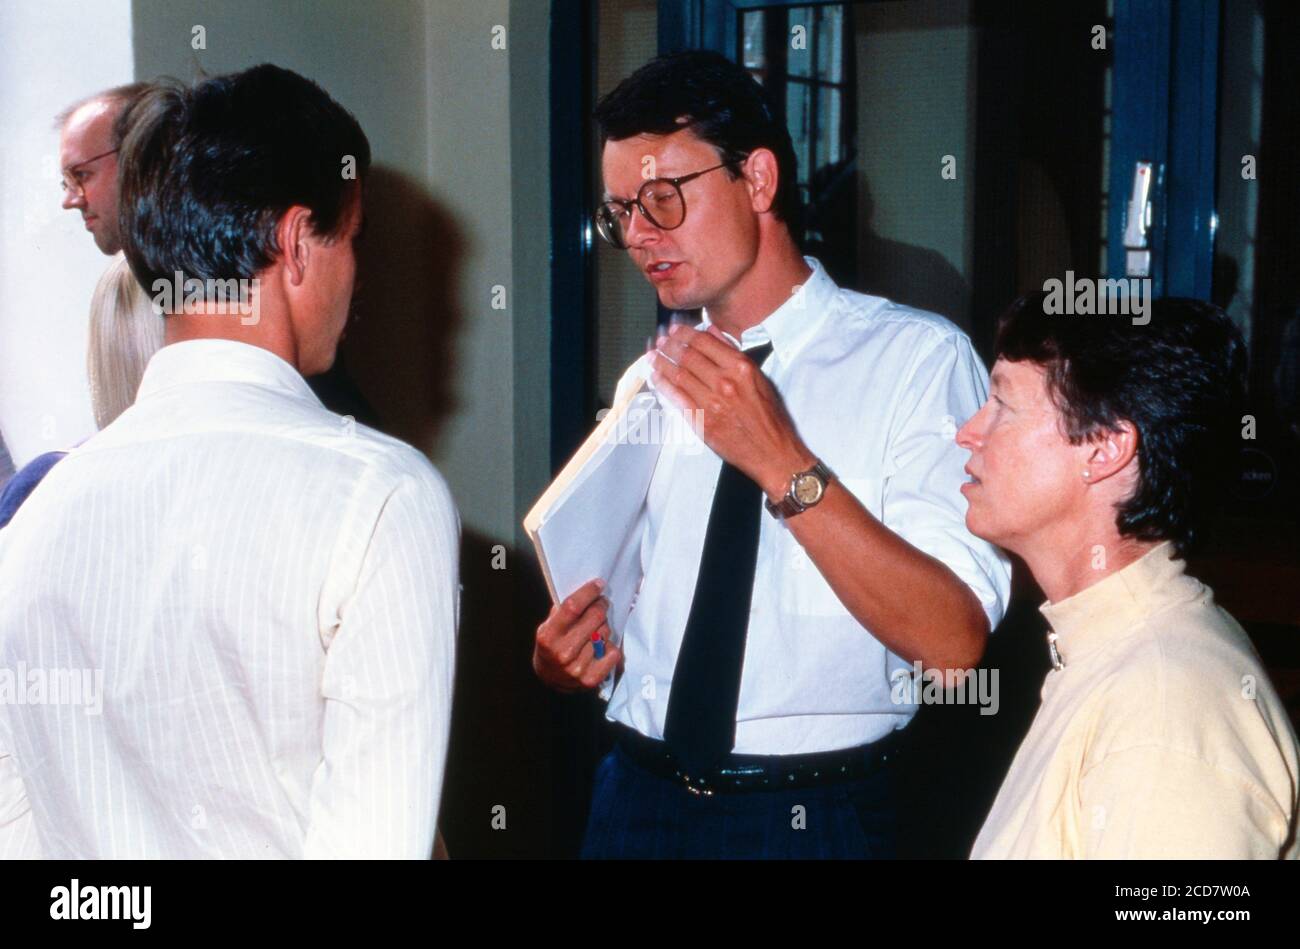 Bildreportage: Prozess Linn Westedt, Absprachen vor dem Gerichtssaal in Hamburg, Deutschland 1990. Stock Photo